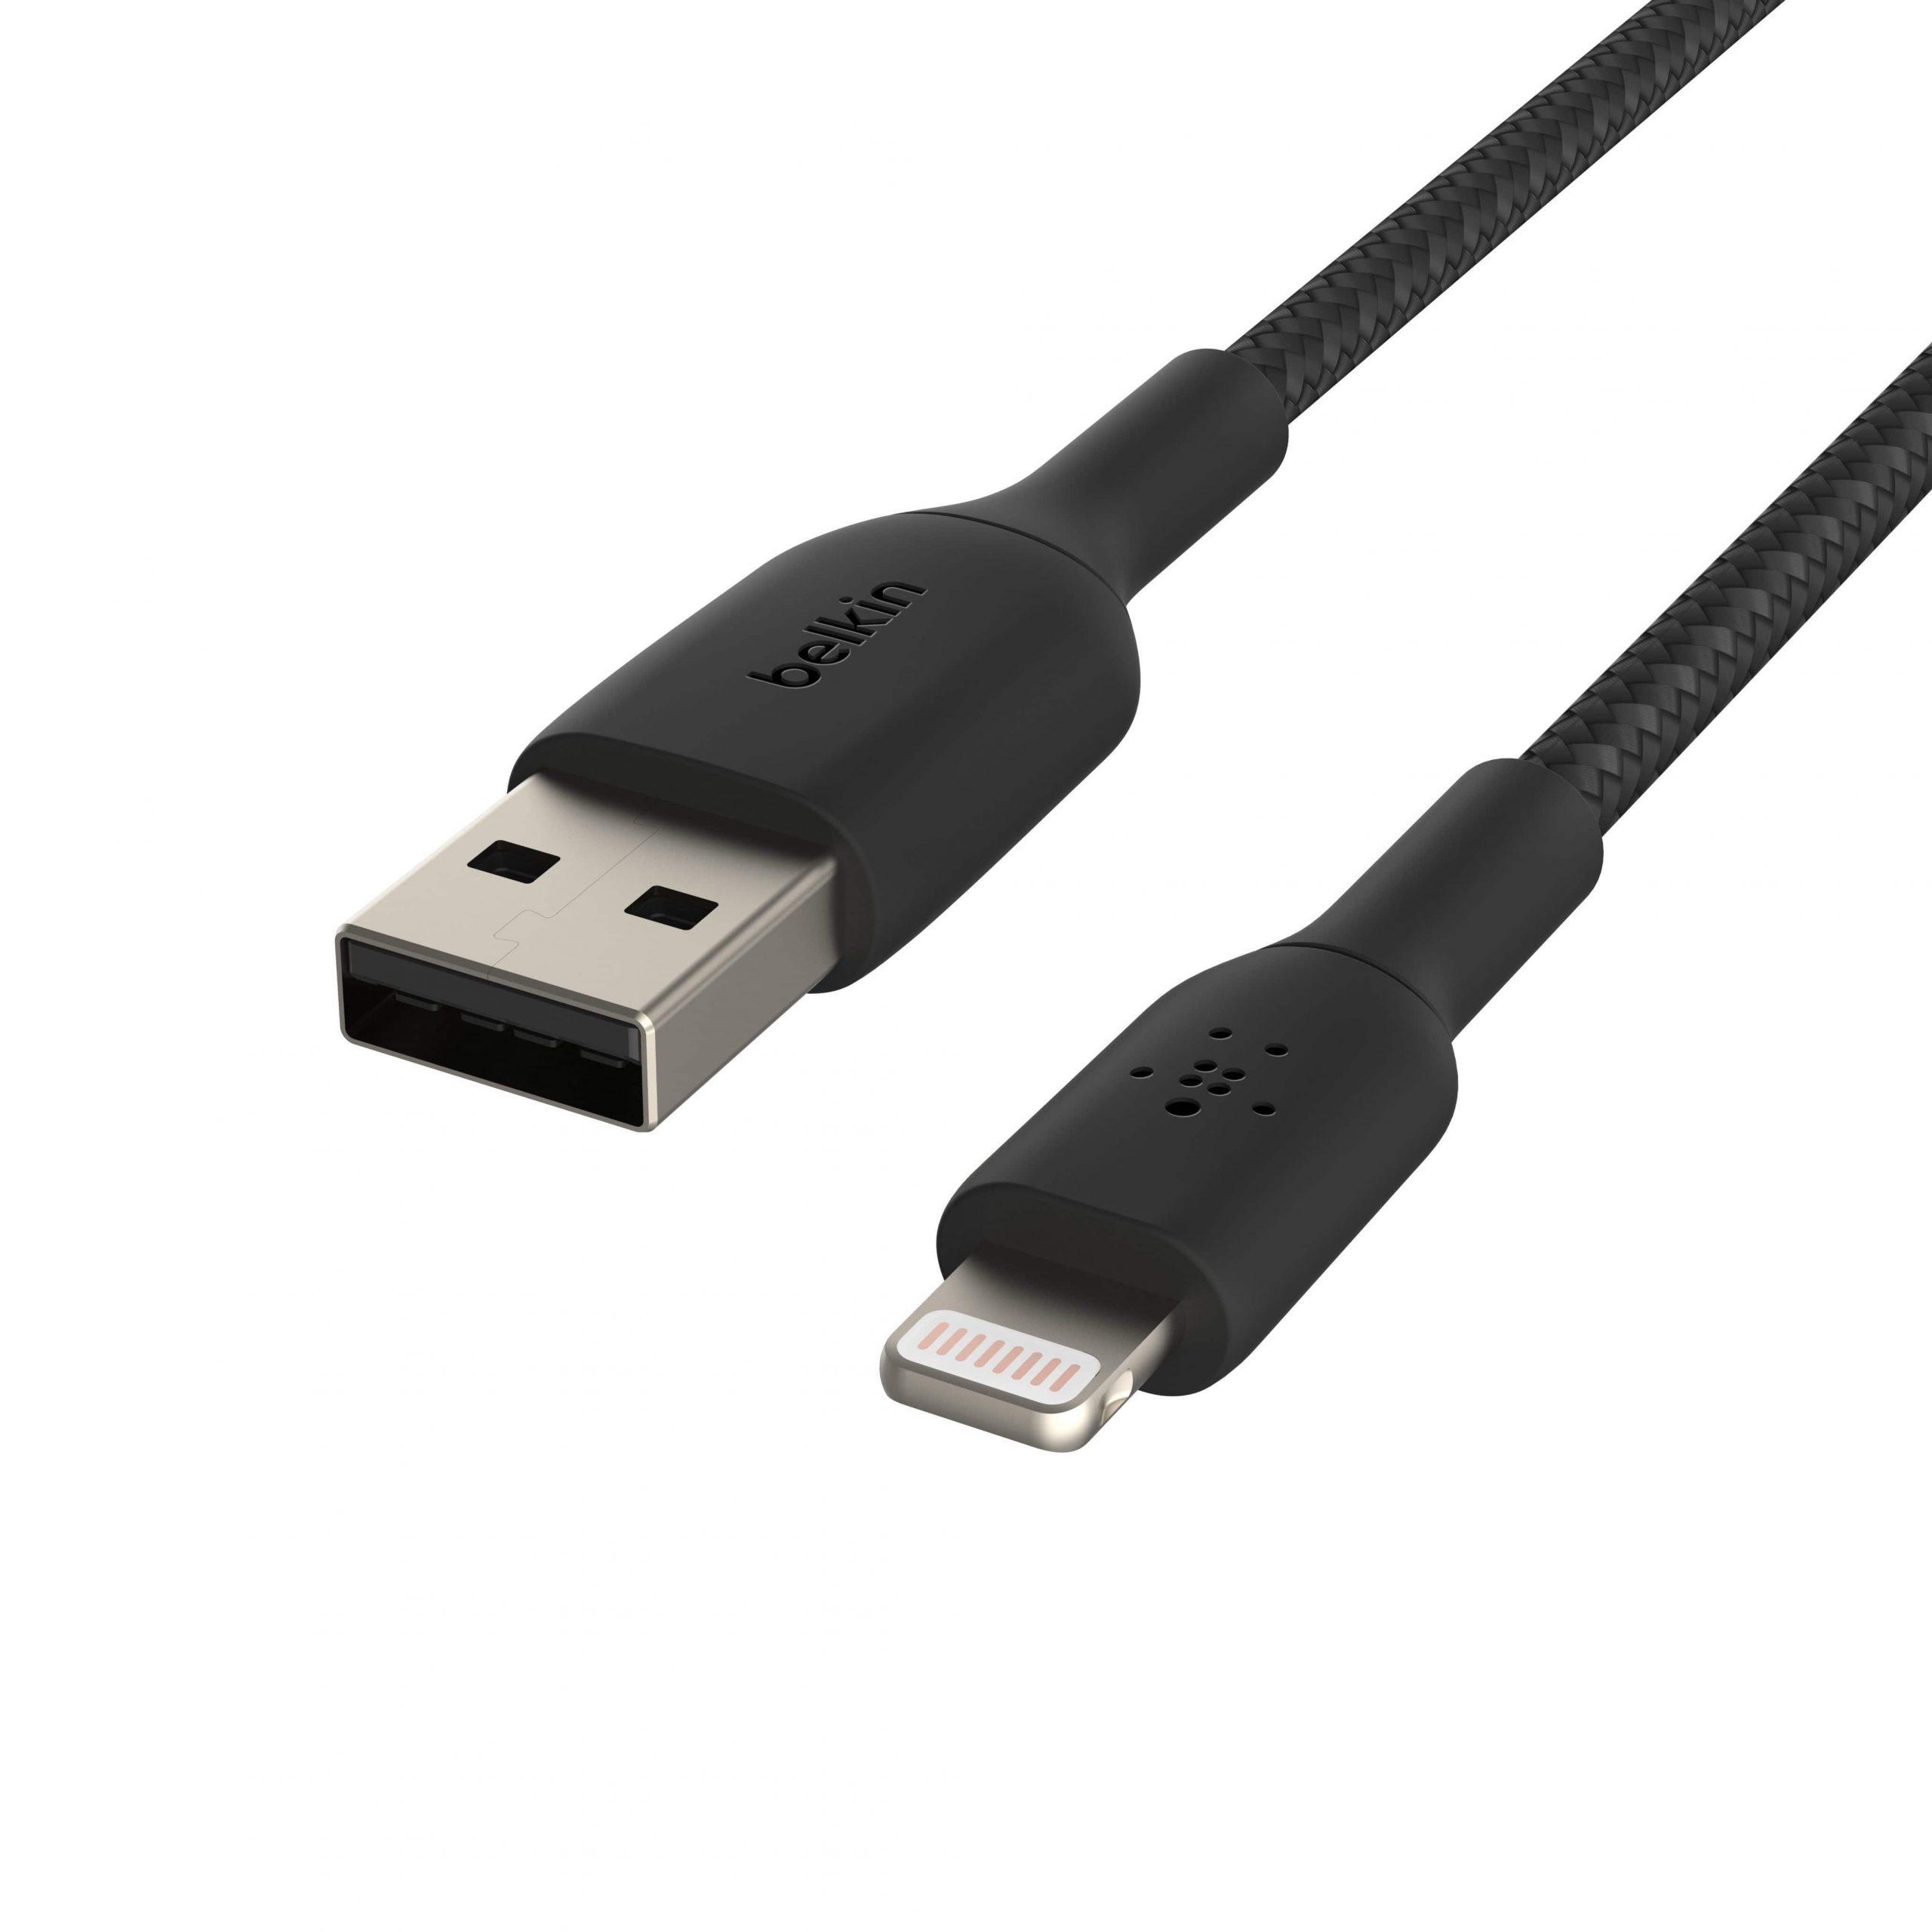 وصلة شاحن (كيبل شحن) آيفون و آيباد بمنفذ USB-A إلى مأخذ Lightning لون أسود Belkin - Boost Charge USB-A to Lightning Braided Cable - cG9zdDo1NTczNw==